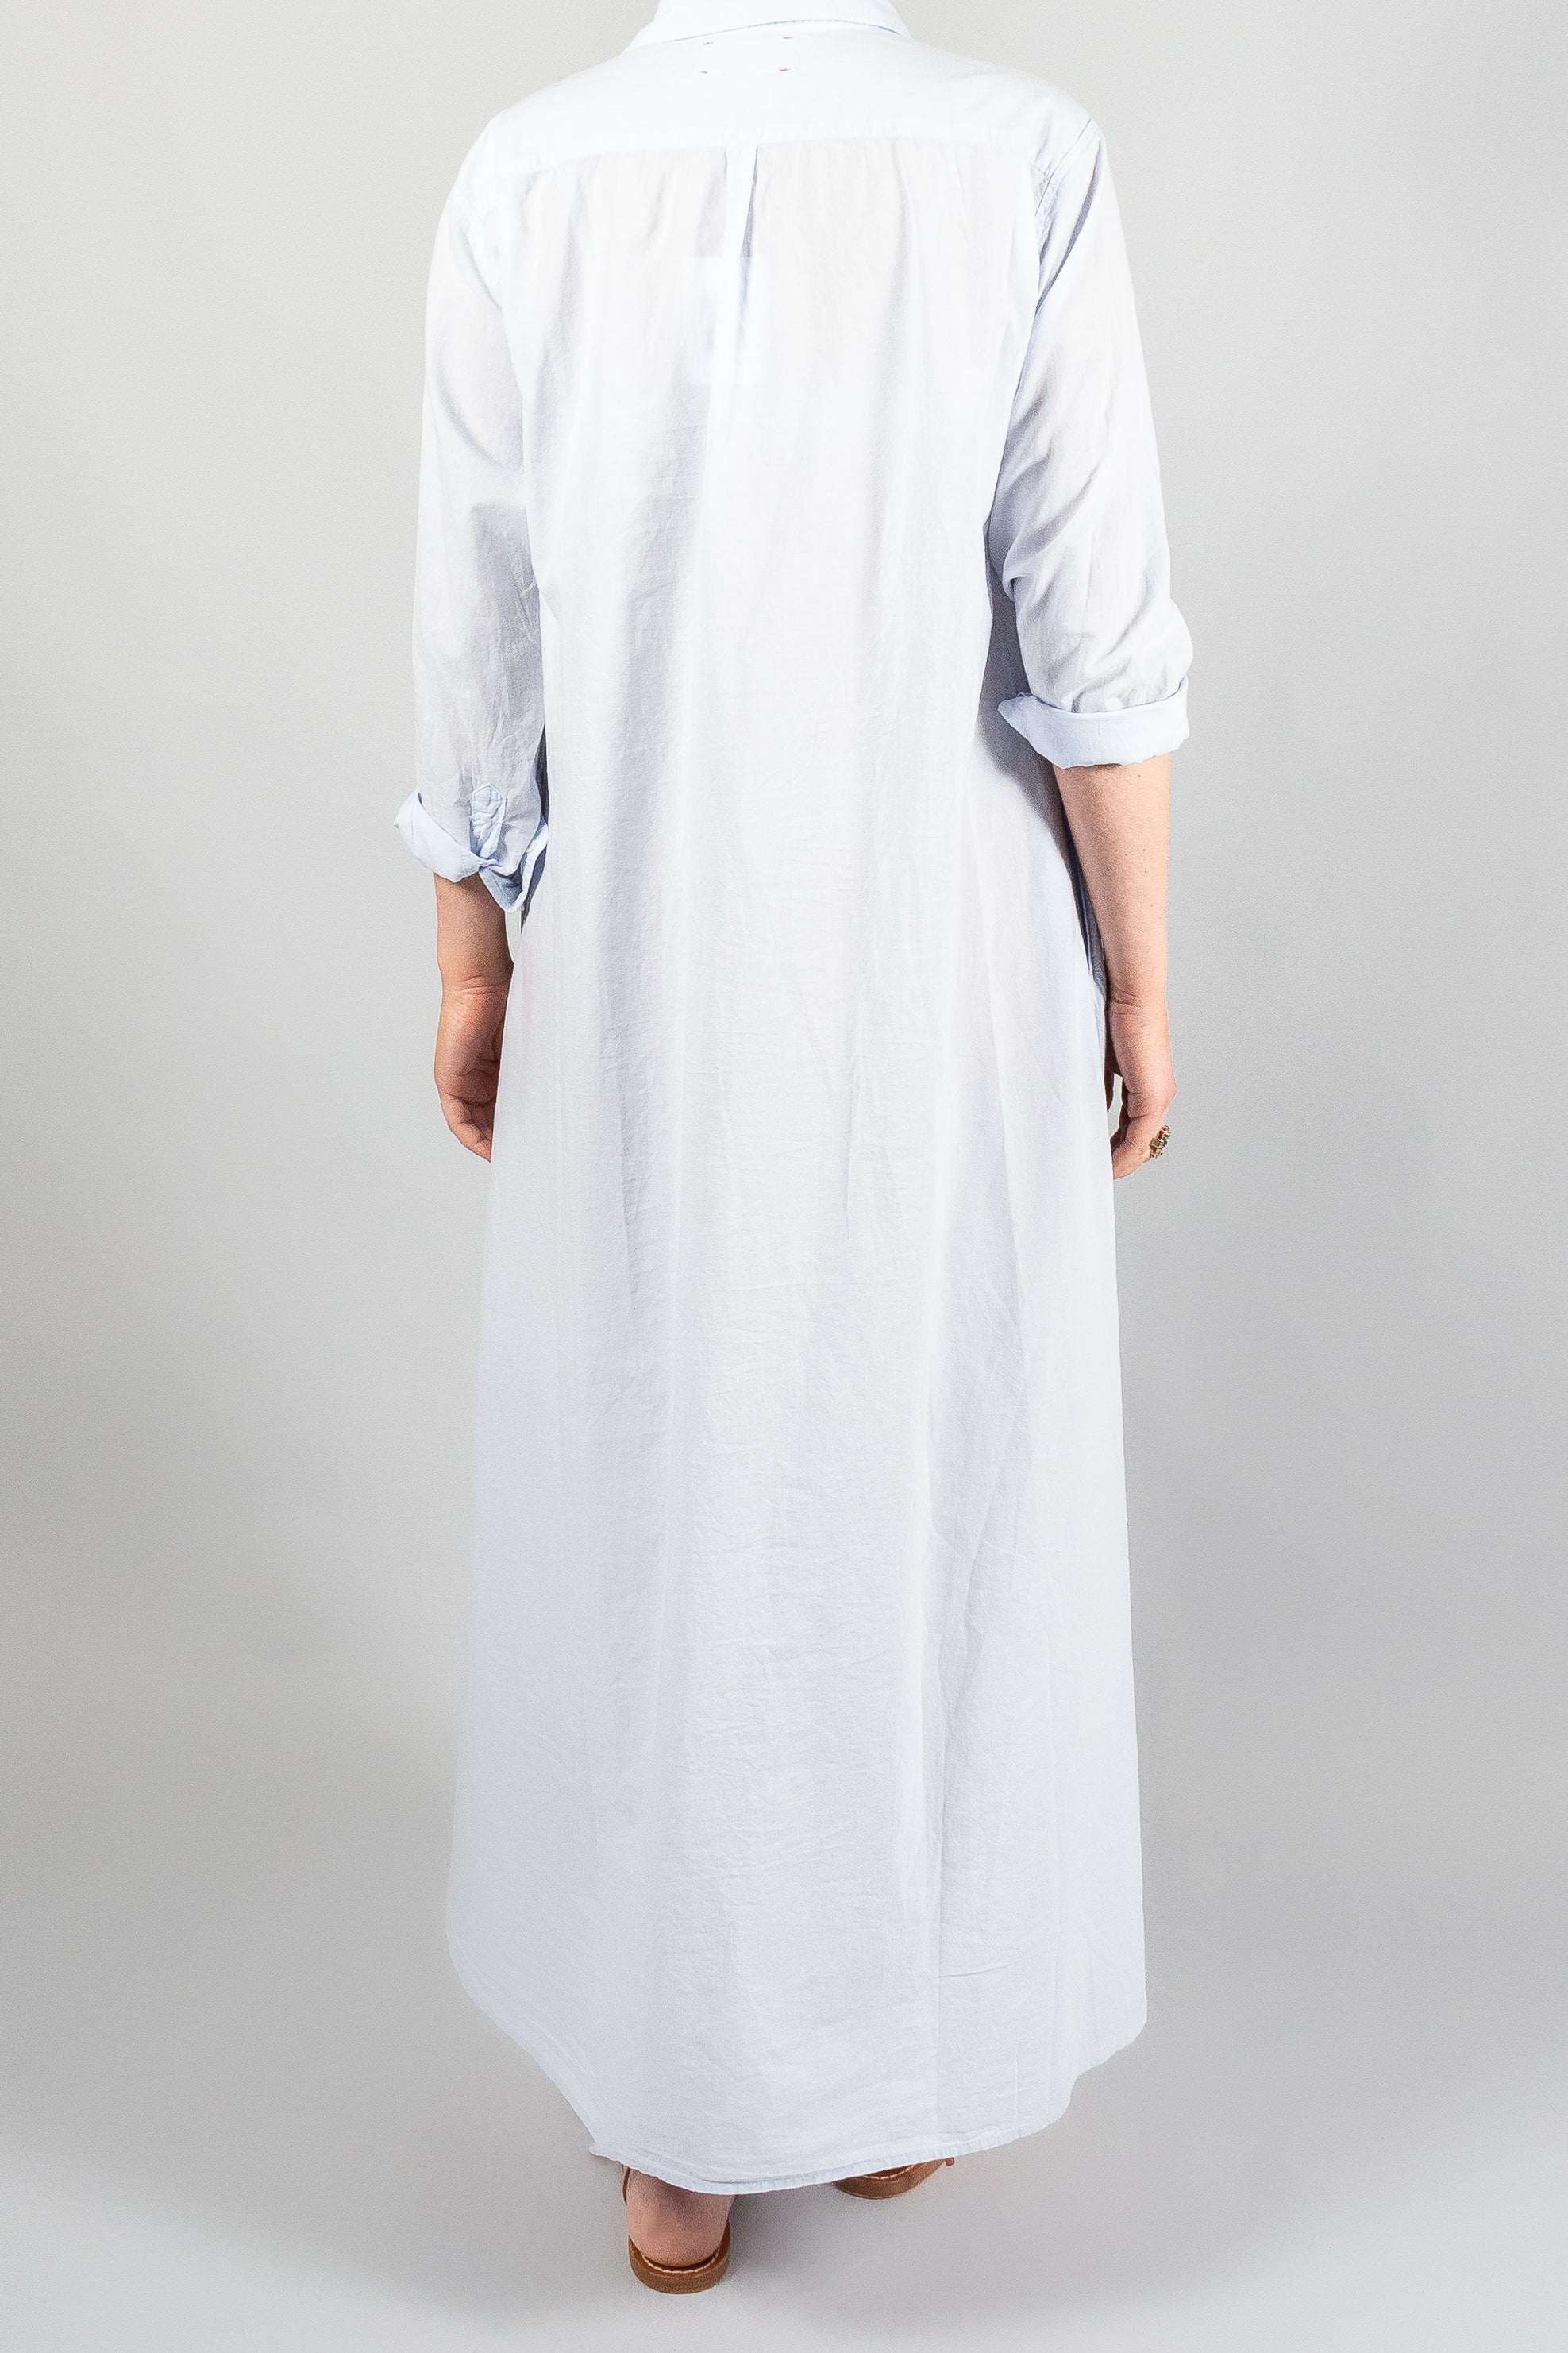 XIRENA BODEN DRESS - WHITE